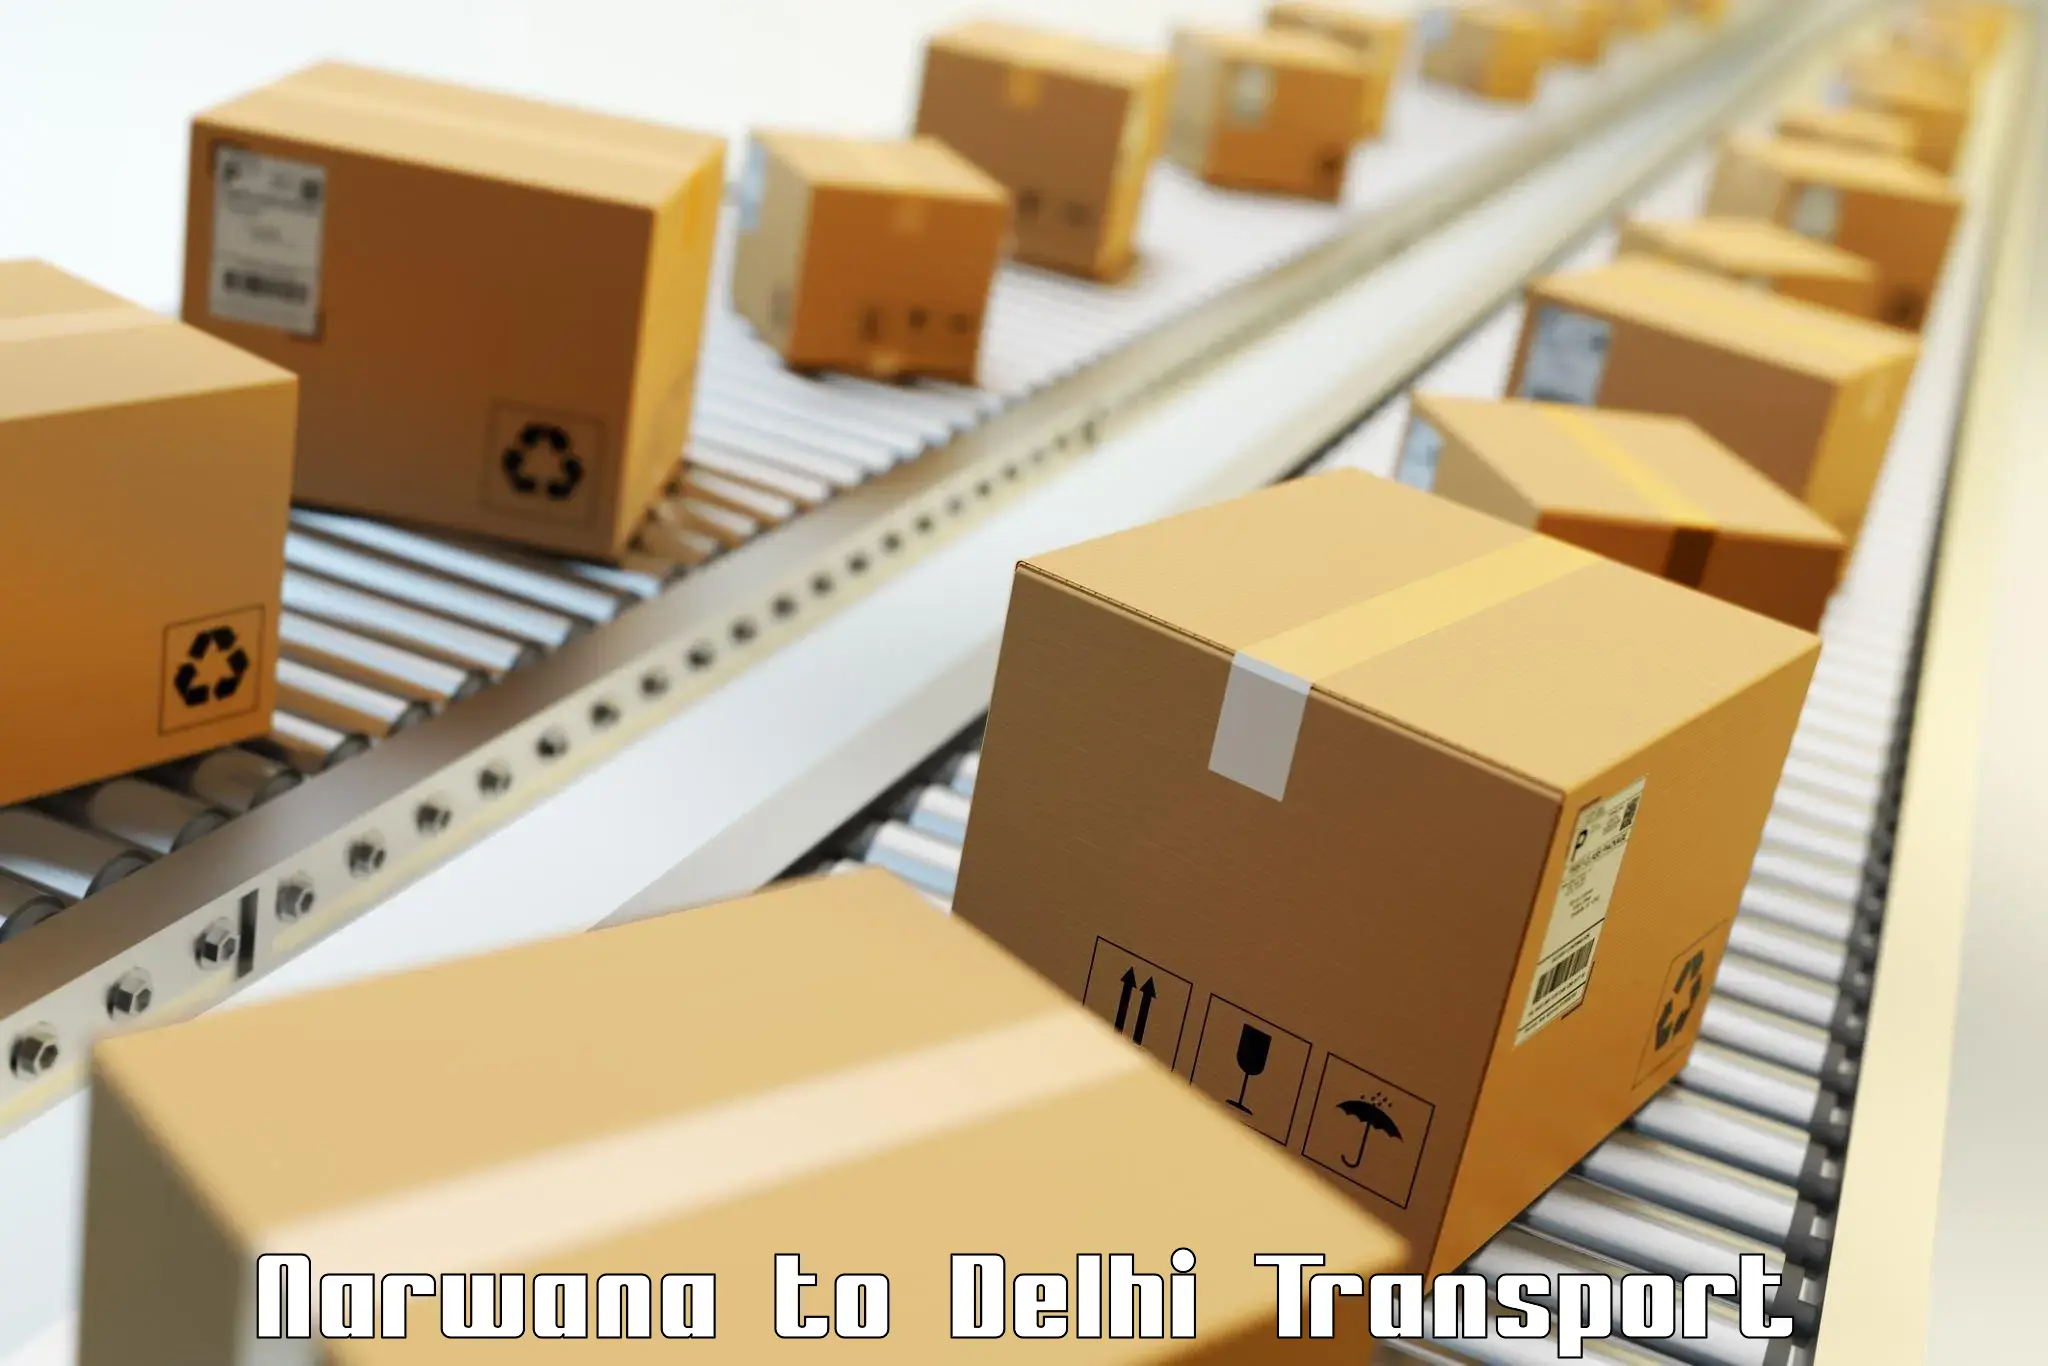 Daily parcel service transport Narwana to Jamia Hamdard New Delhi